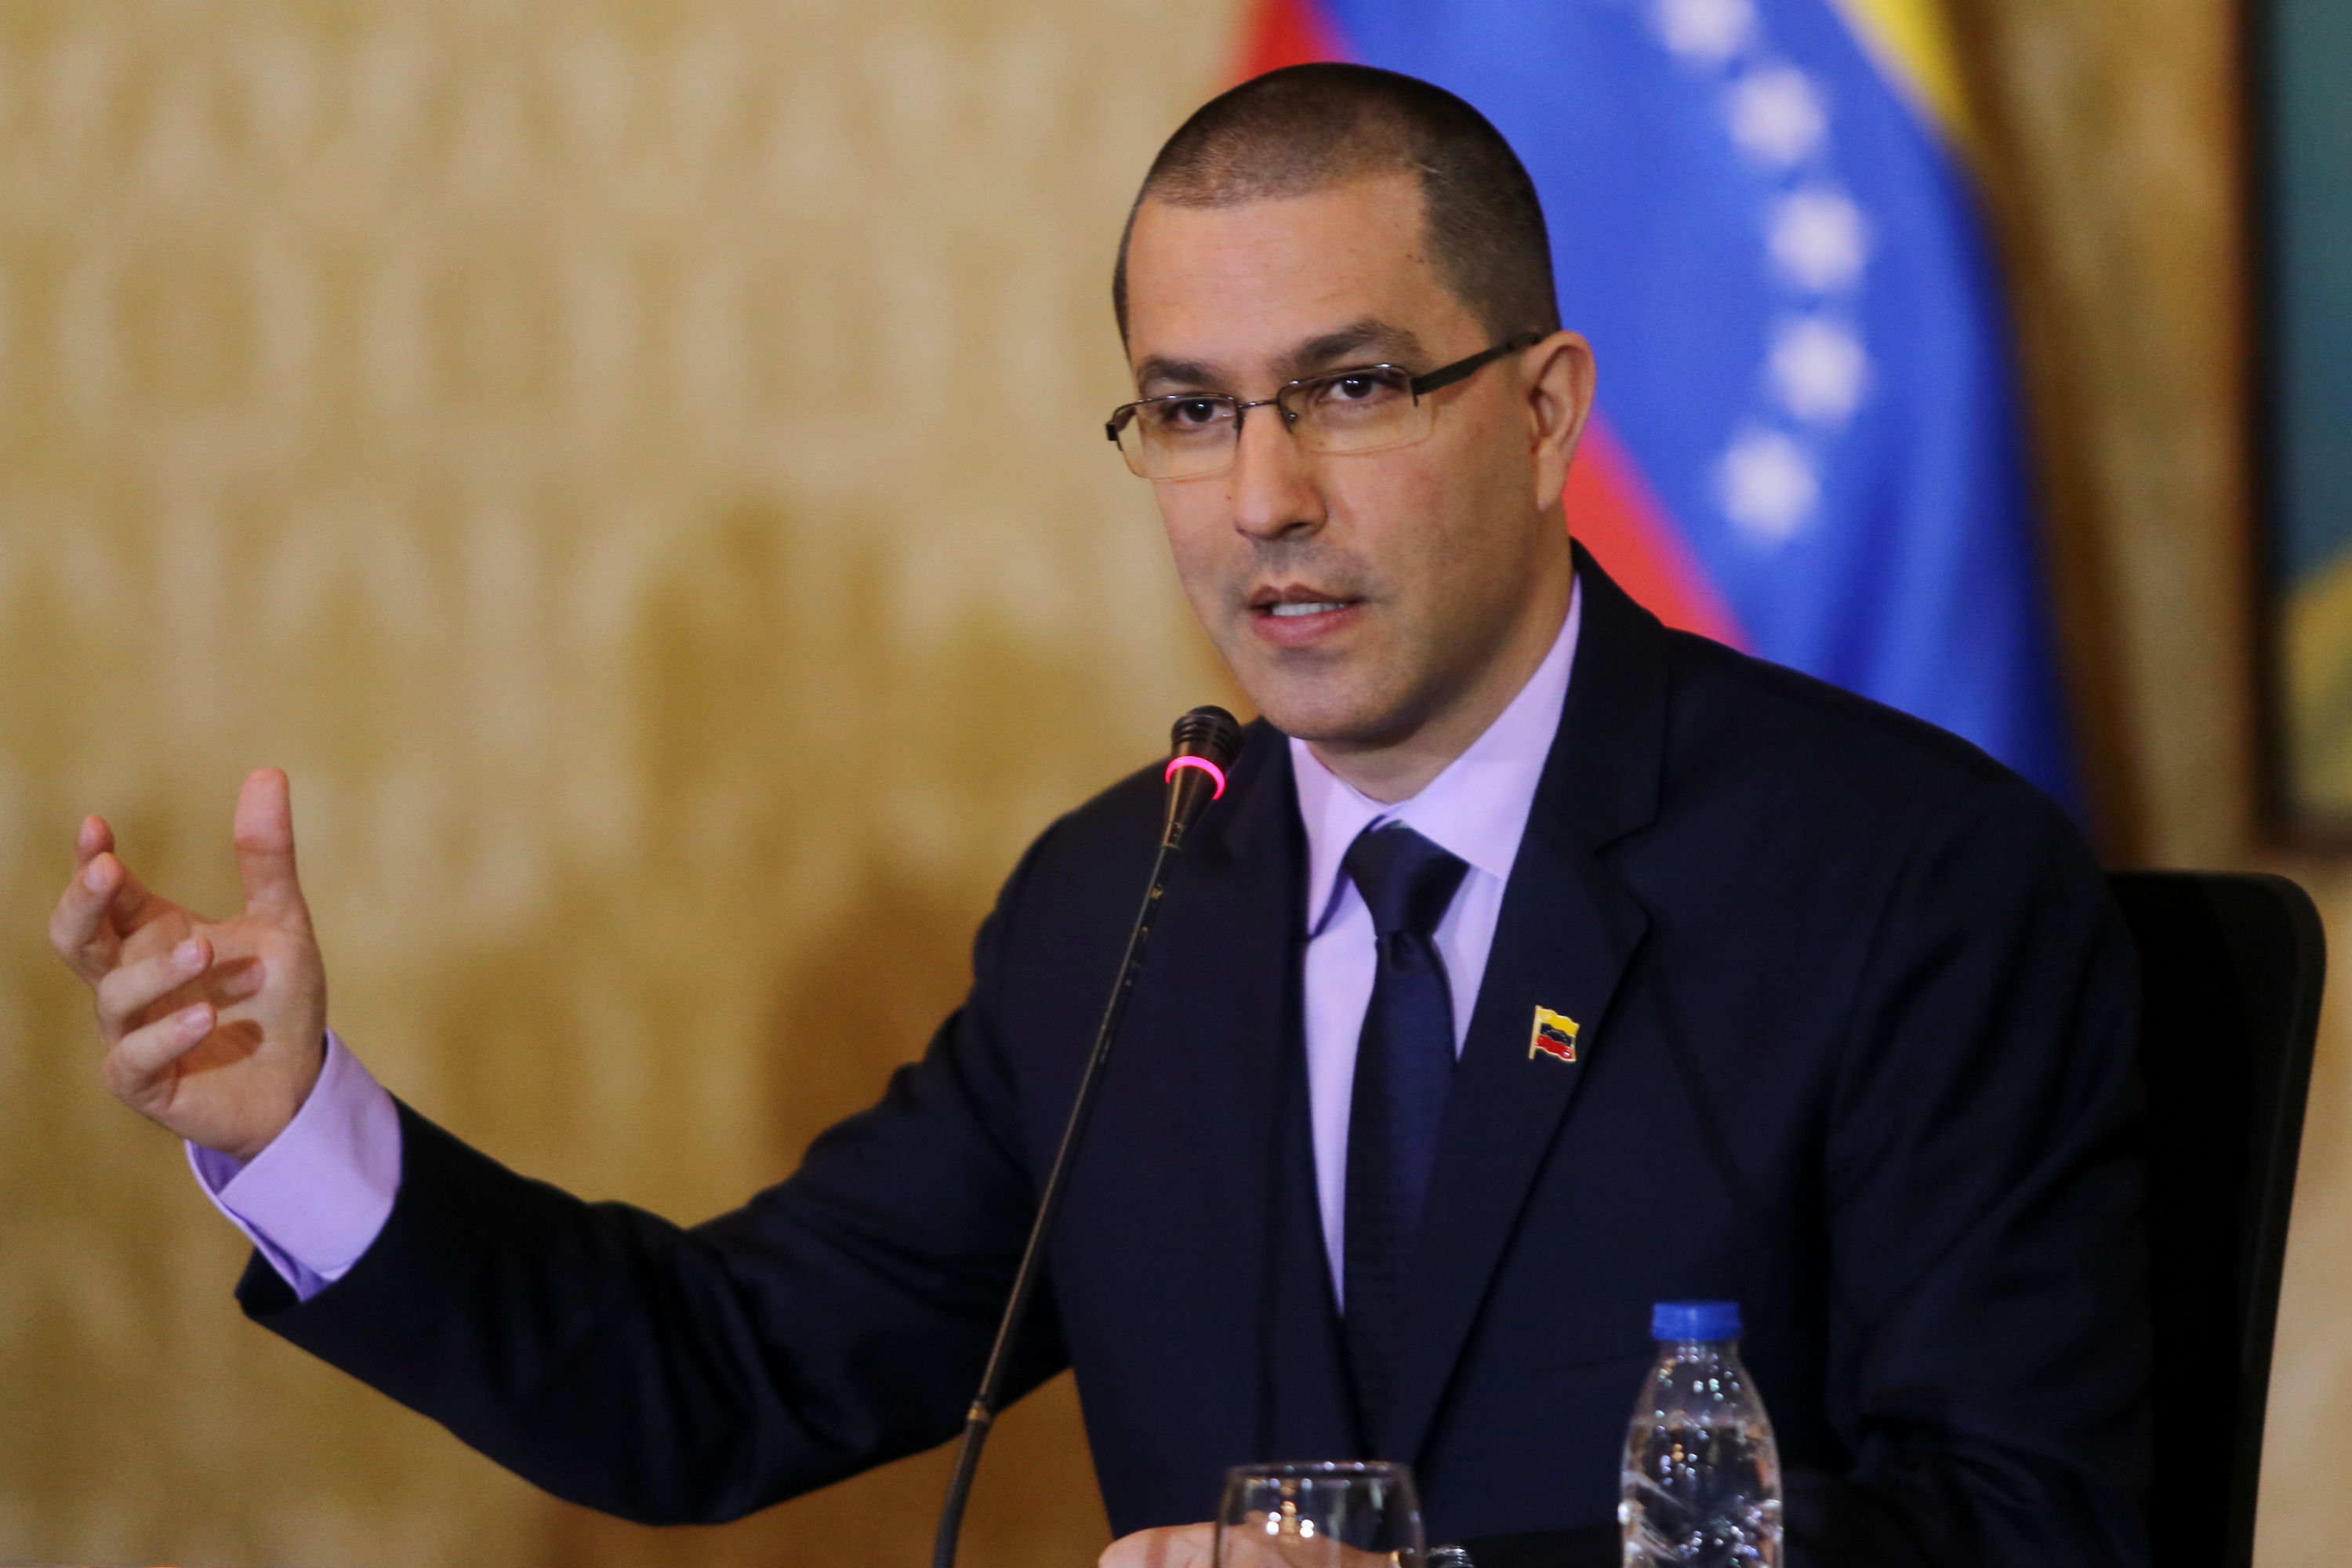 El ministro venezolano sostuvo que el Gobierno de Canadá ha enviado a Venezuela 14 comunicados injerencistas.